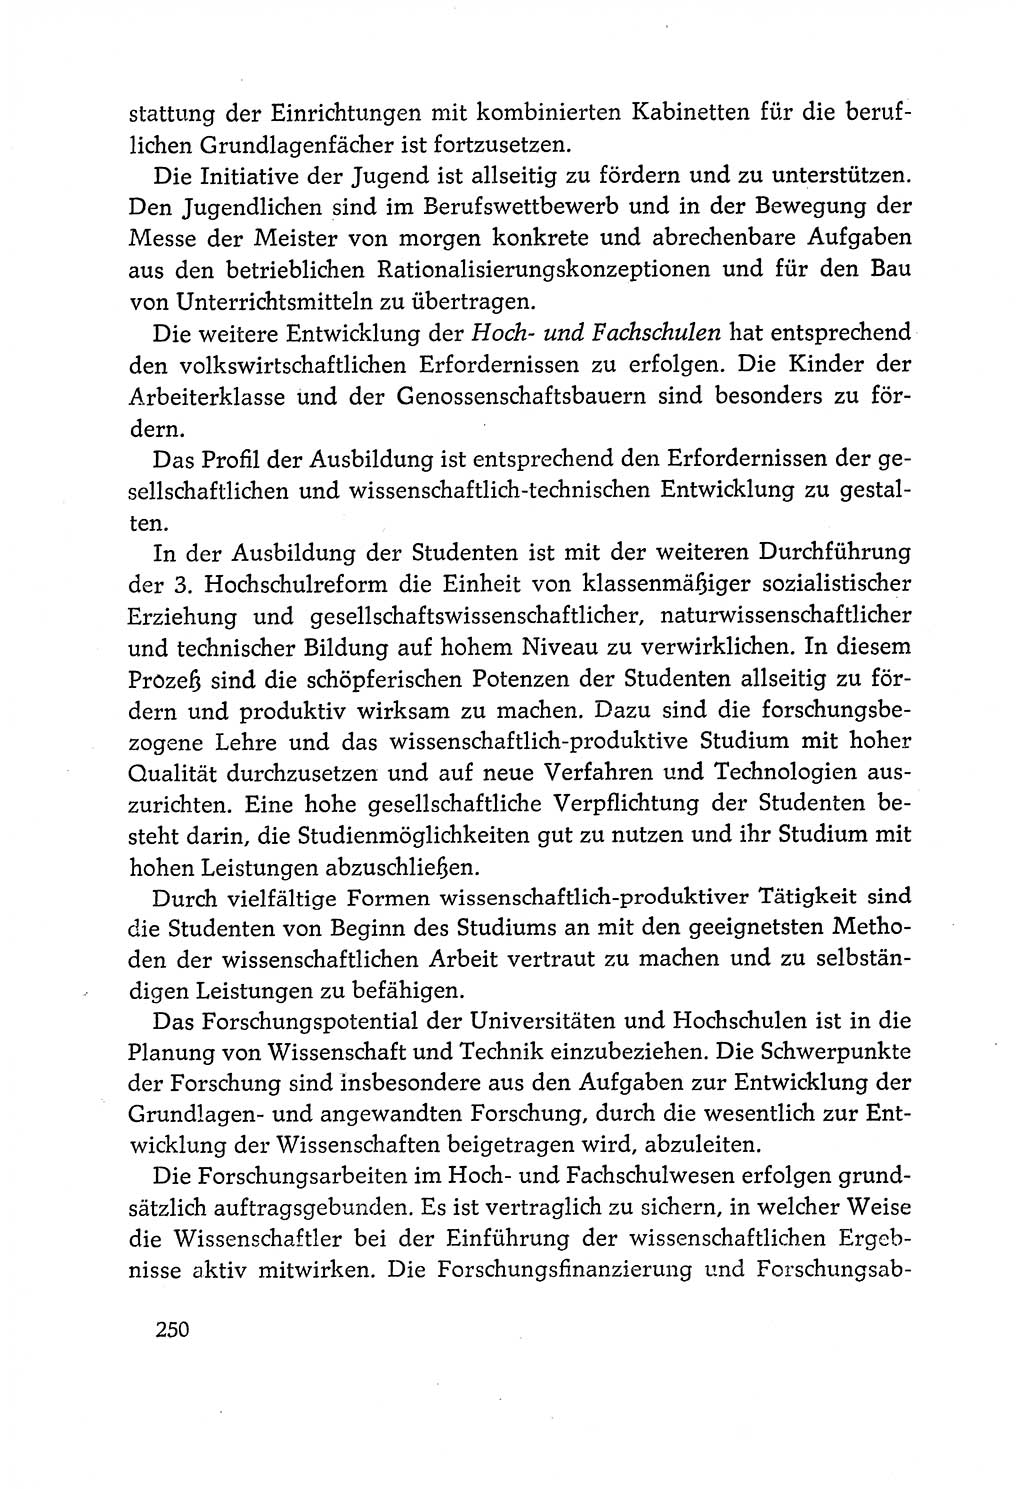 Dokumente der Sozialistischen Einheitspartei Deutschlands (SED) [Deutsche Demokratische Republik (DDR)] 1970-1971, Seite 250 (Dok. SED DDR 1970-1971, S. 250)